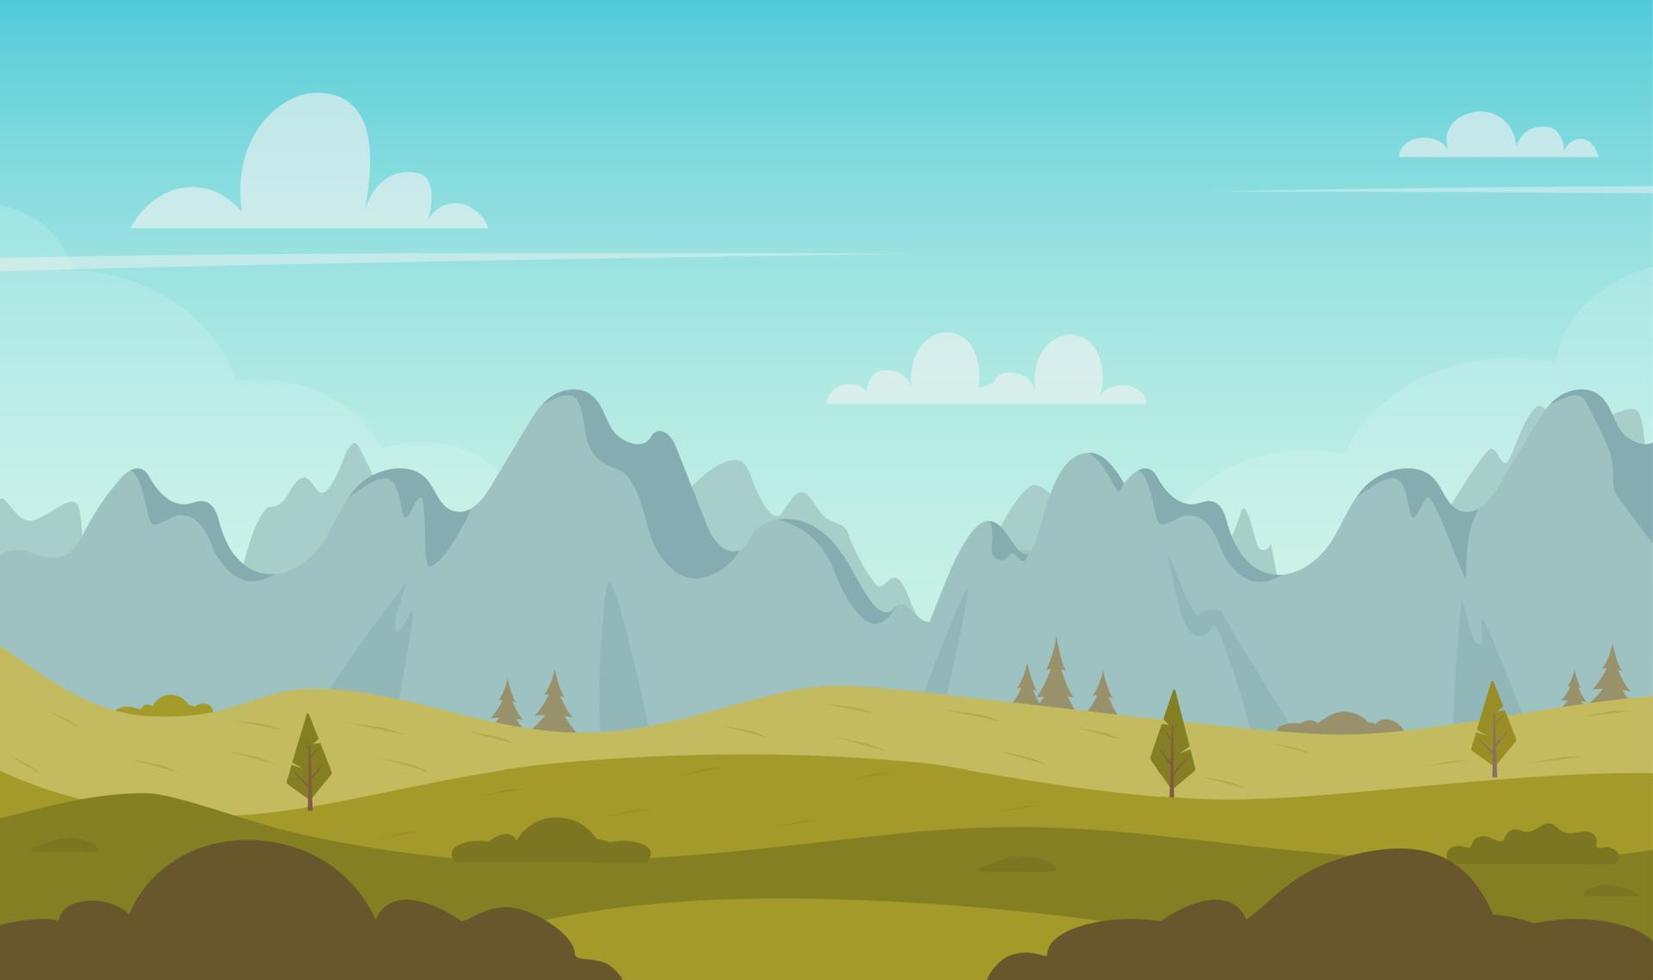 Schöne grüne Hügel mit Bergen reihen sich am Horizont. Landschaft mit grünen Hügeln, Bäumen, Büschen, Bergen, strahlend blauem Himmel. Landschaftshintergrund für Banner, Animation. Vektor-Illustration. vektor